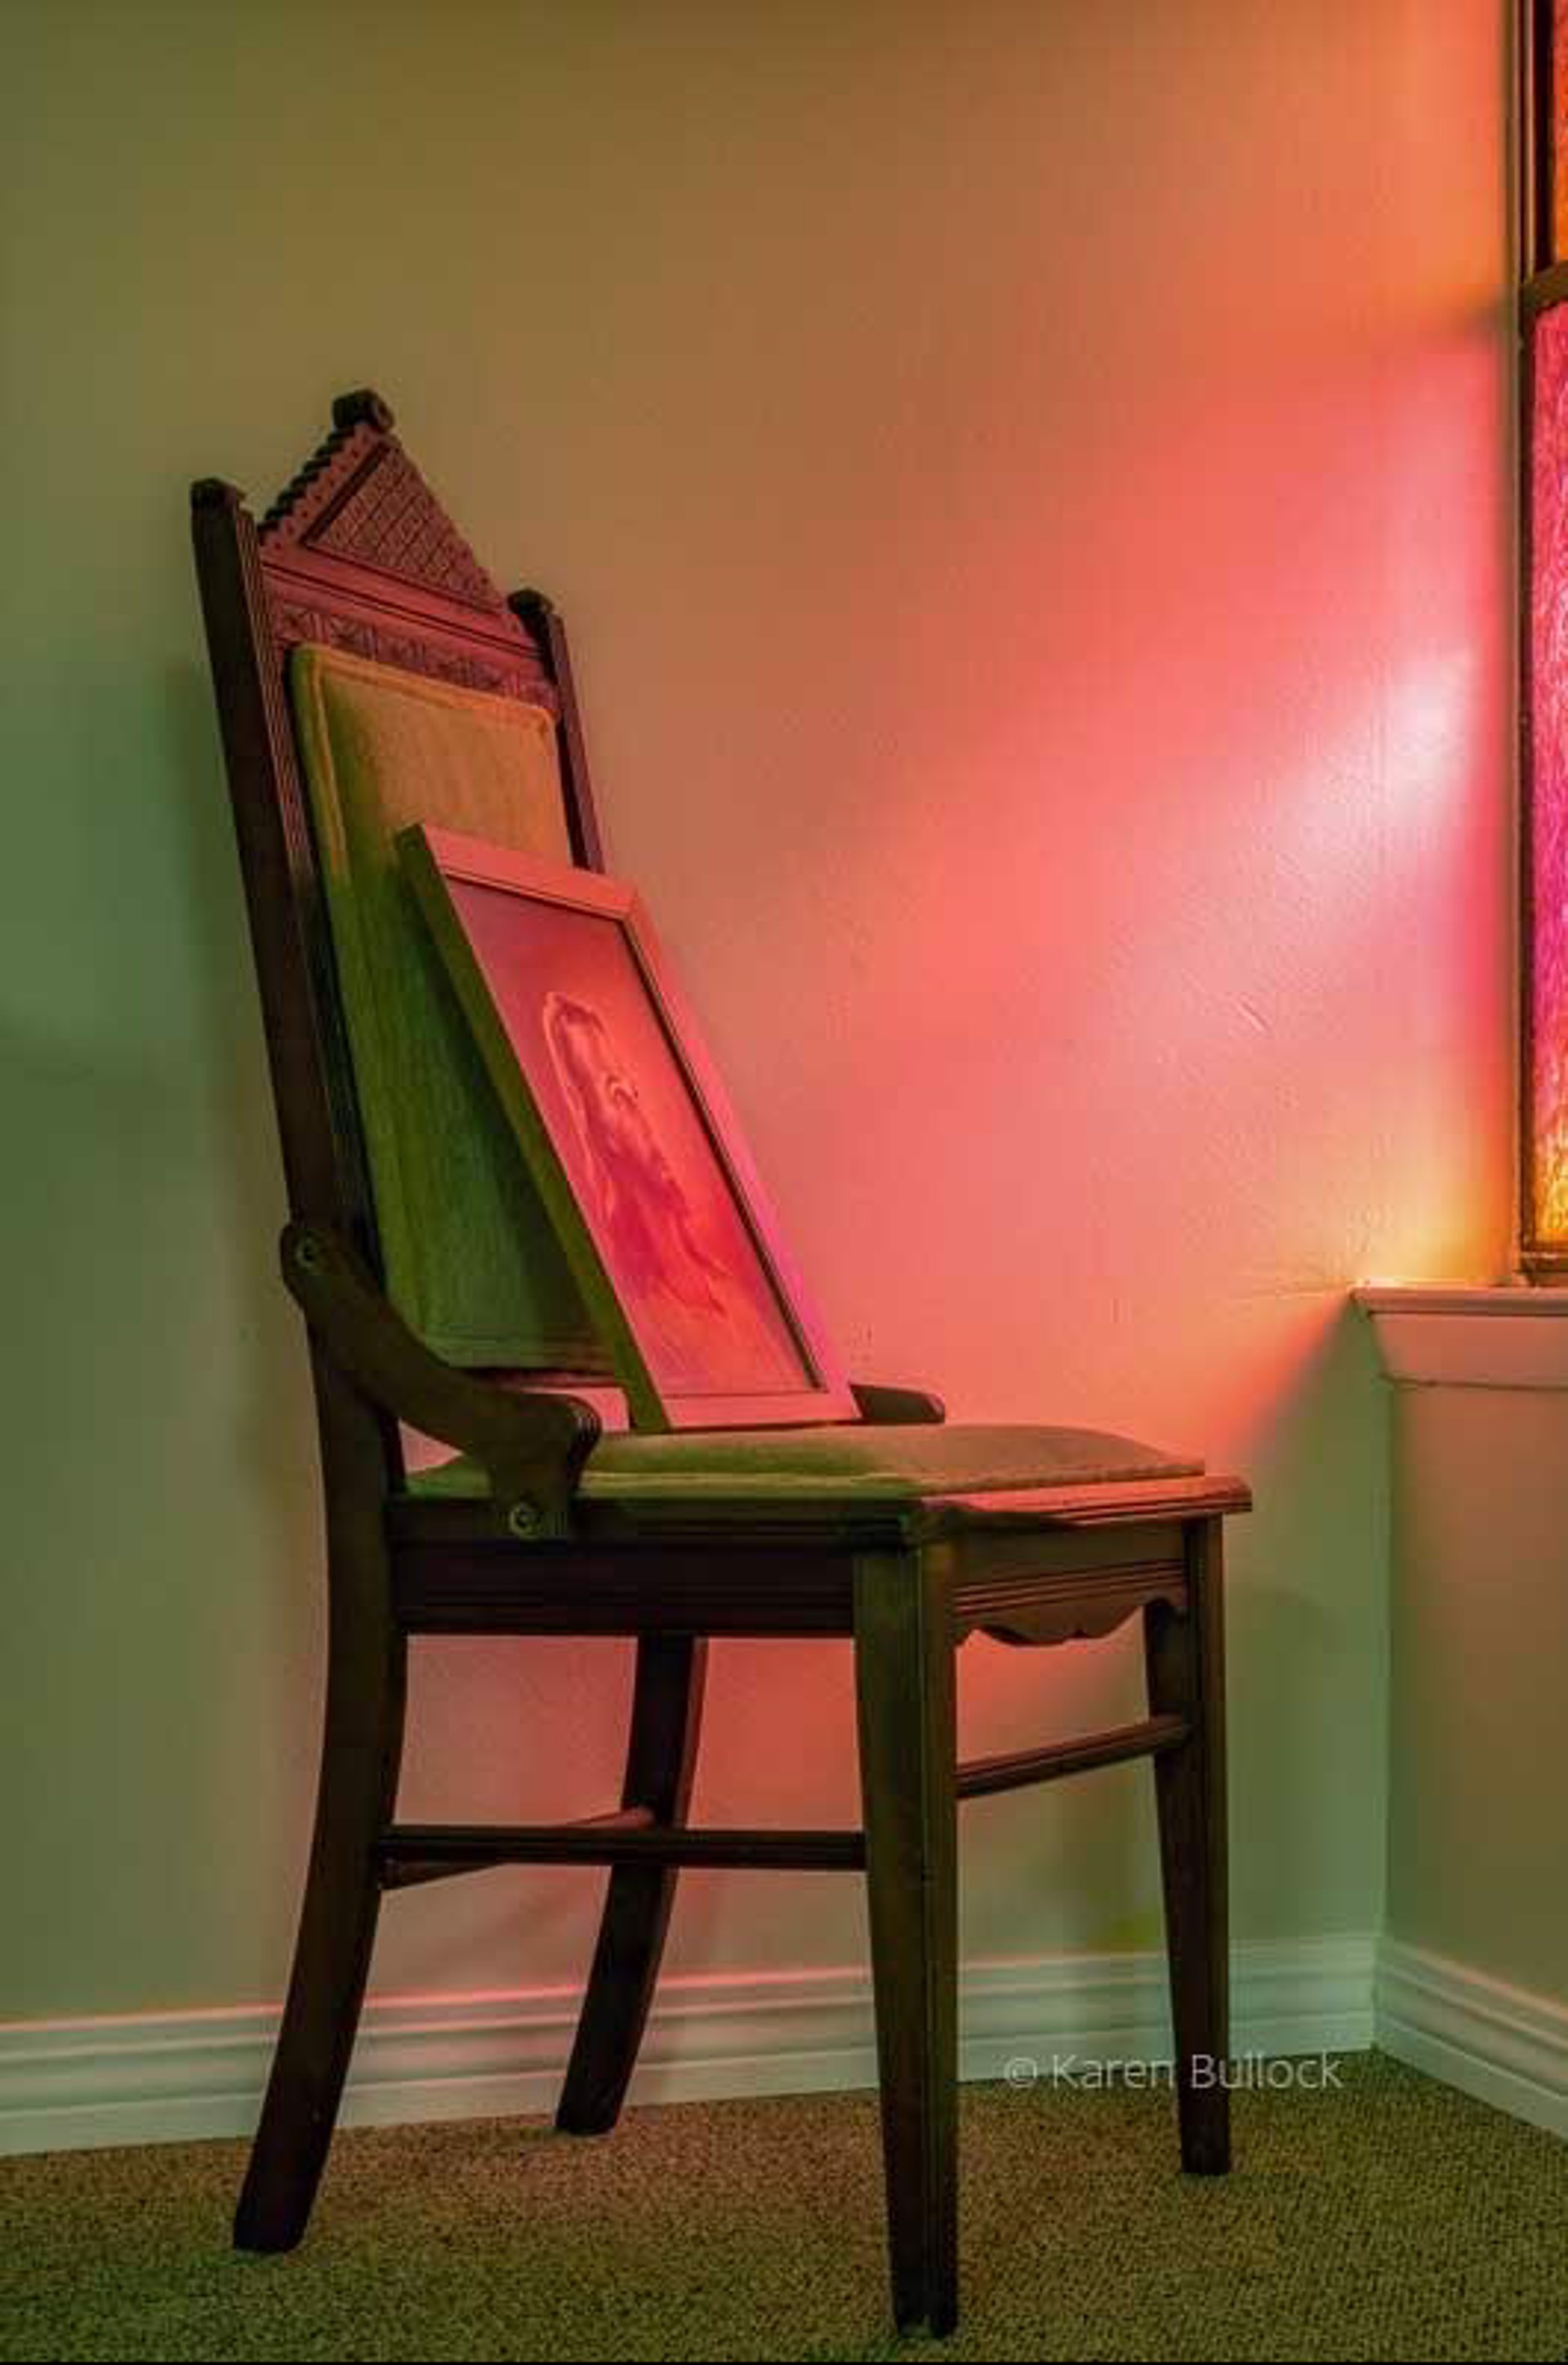 Green Velvet Chair by Karen Bullock